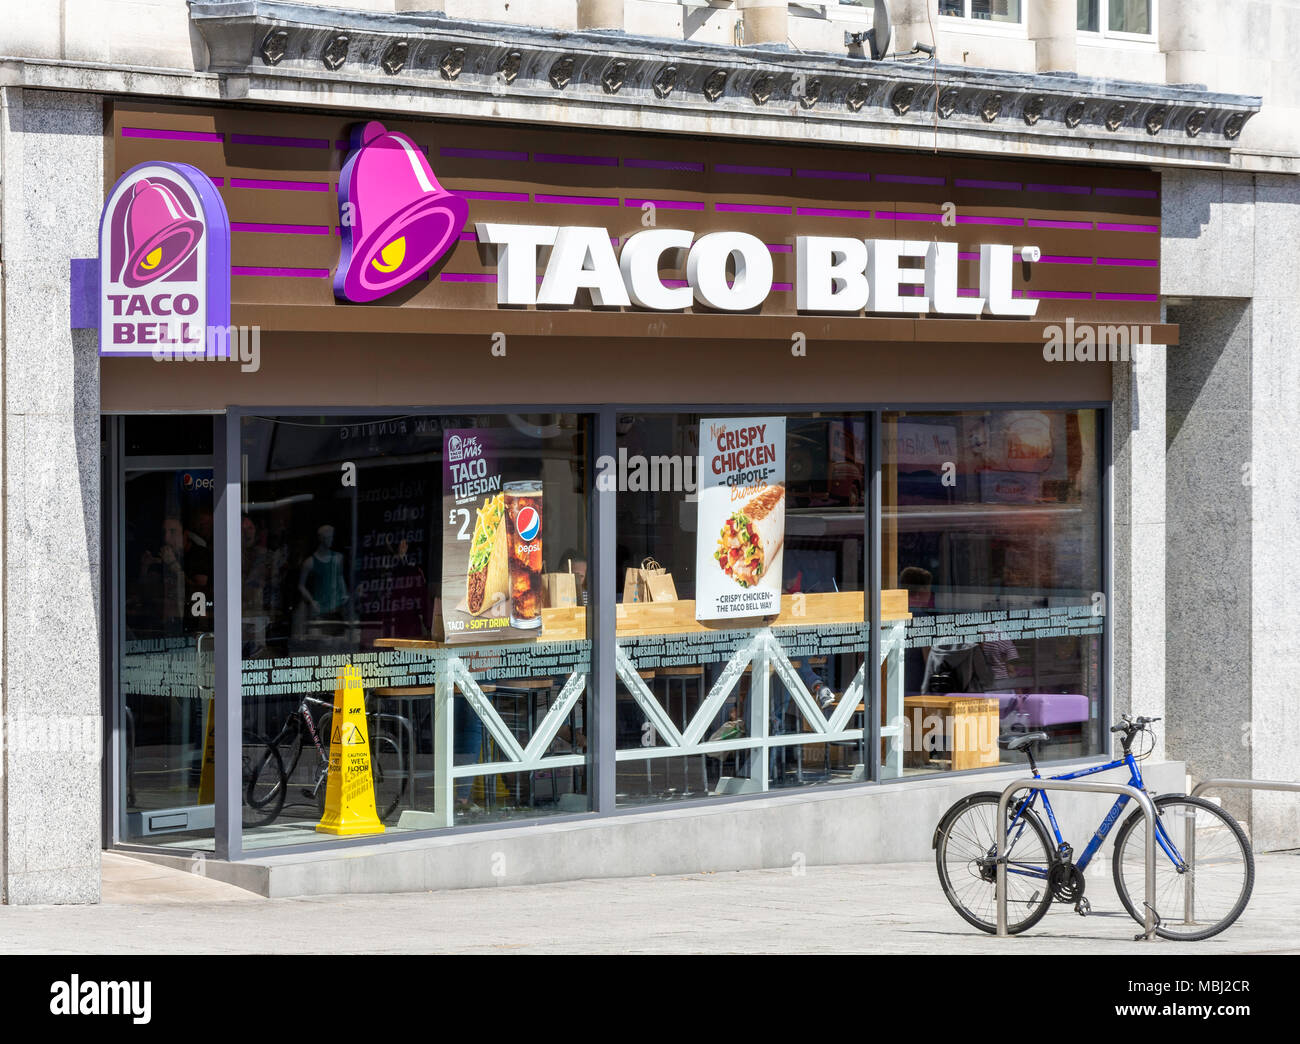 Taco Bell restaurante de comida rápida mexicana, Hanover edificios, Southampton, Hampshire, Inglaterra, Reino Unido Foto de stock